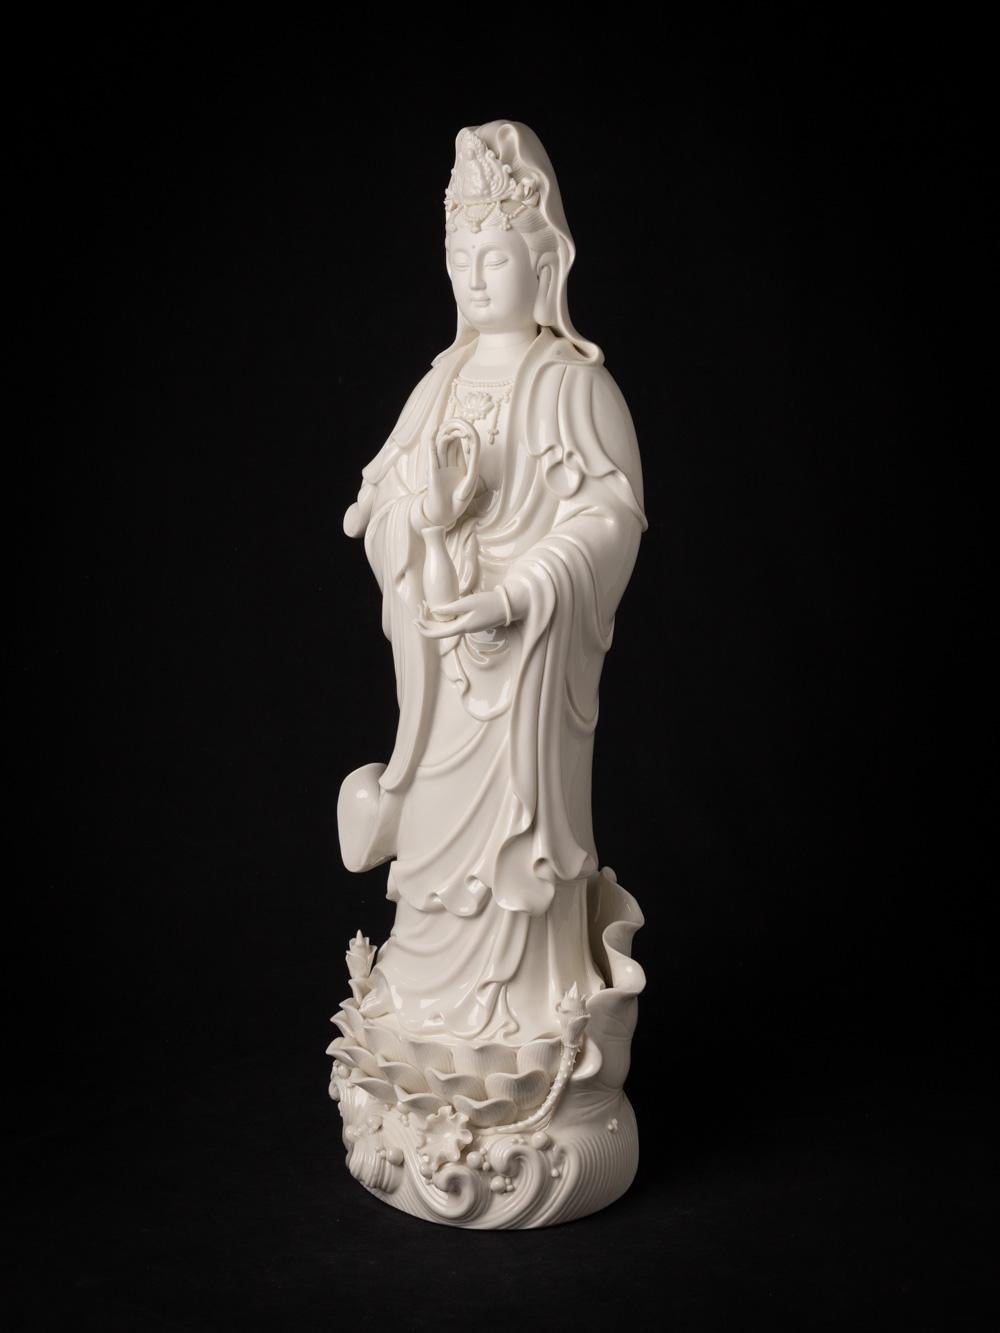 Die sehr schöne und detailreiche Guan Yin-Statue aus Porzellan ist ein exquisites Kunstwerk, das aus China stammt. Die aus hochwertigem Dehua-Porzellan gefertigte Statue hat eine elegante Höhe von 65,5 cm und misst 22,5 cm in der Breite und 20 cm in